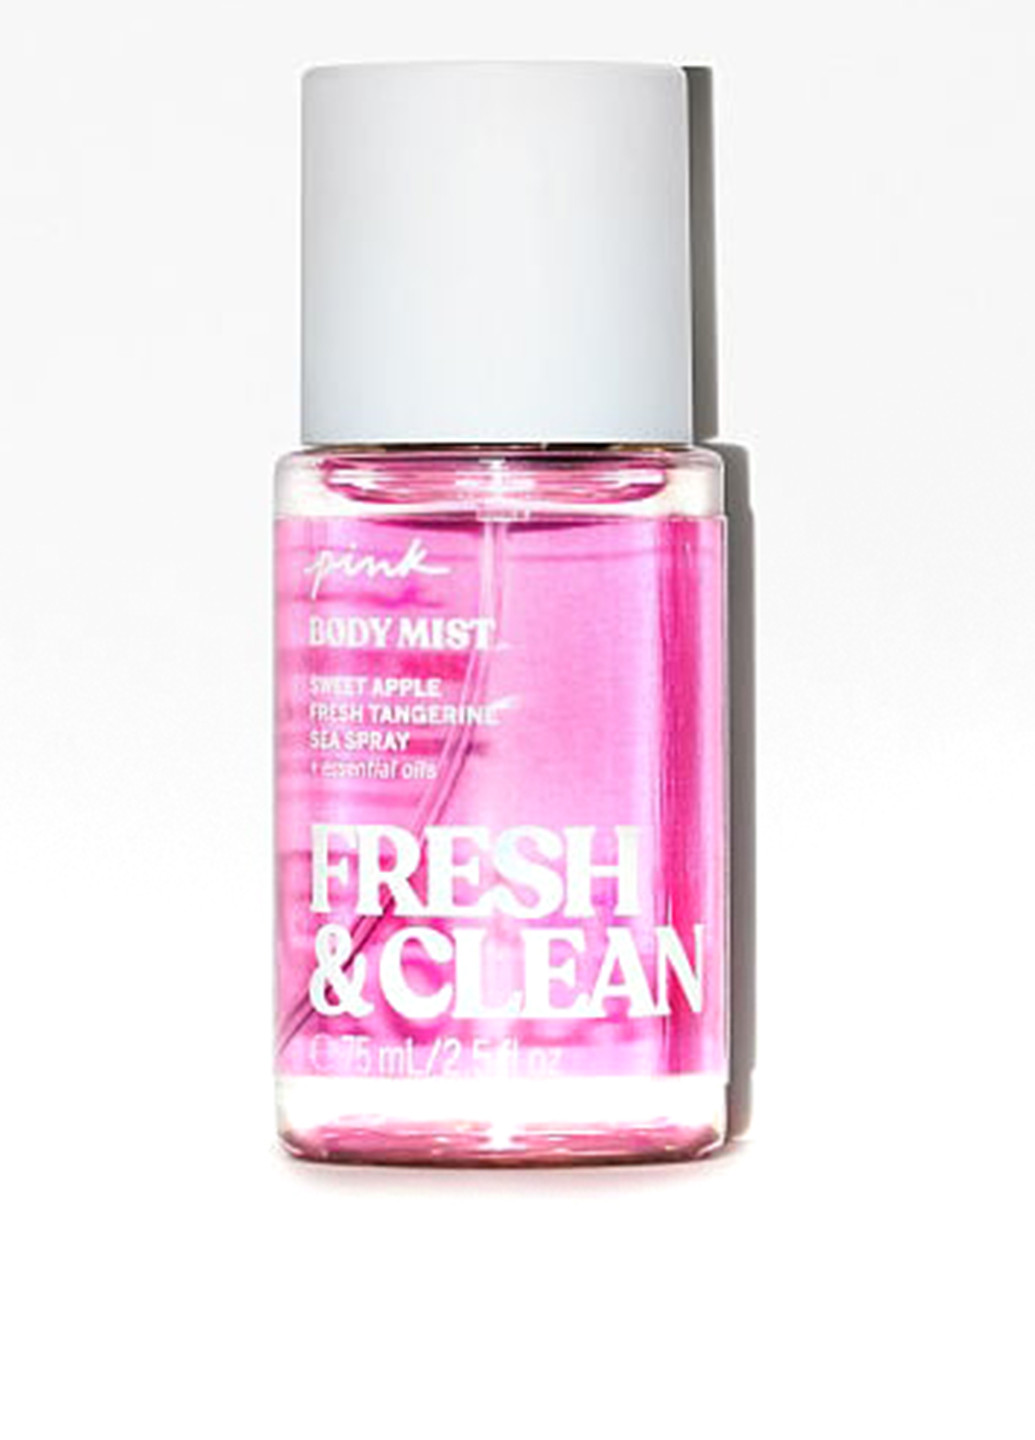 Подарунковий набір Fresh & Clean (спрей, лосьйон) Victoria's Secret (273141619)